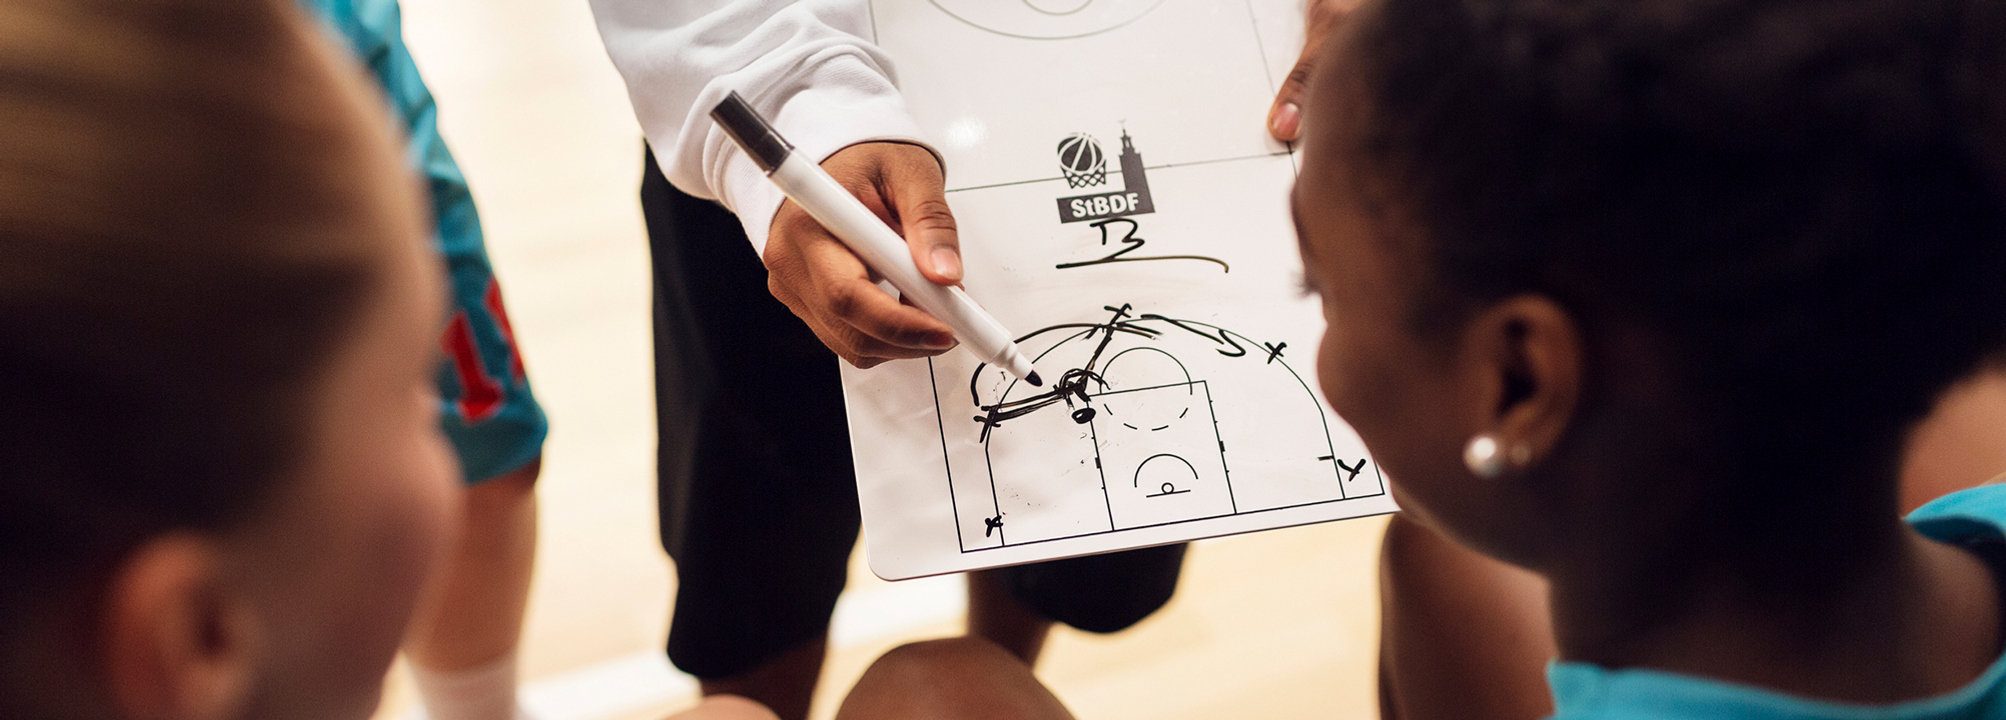 Basketspelare får instruktioner från sin tränare ritat på en tavla.